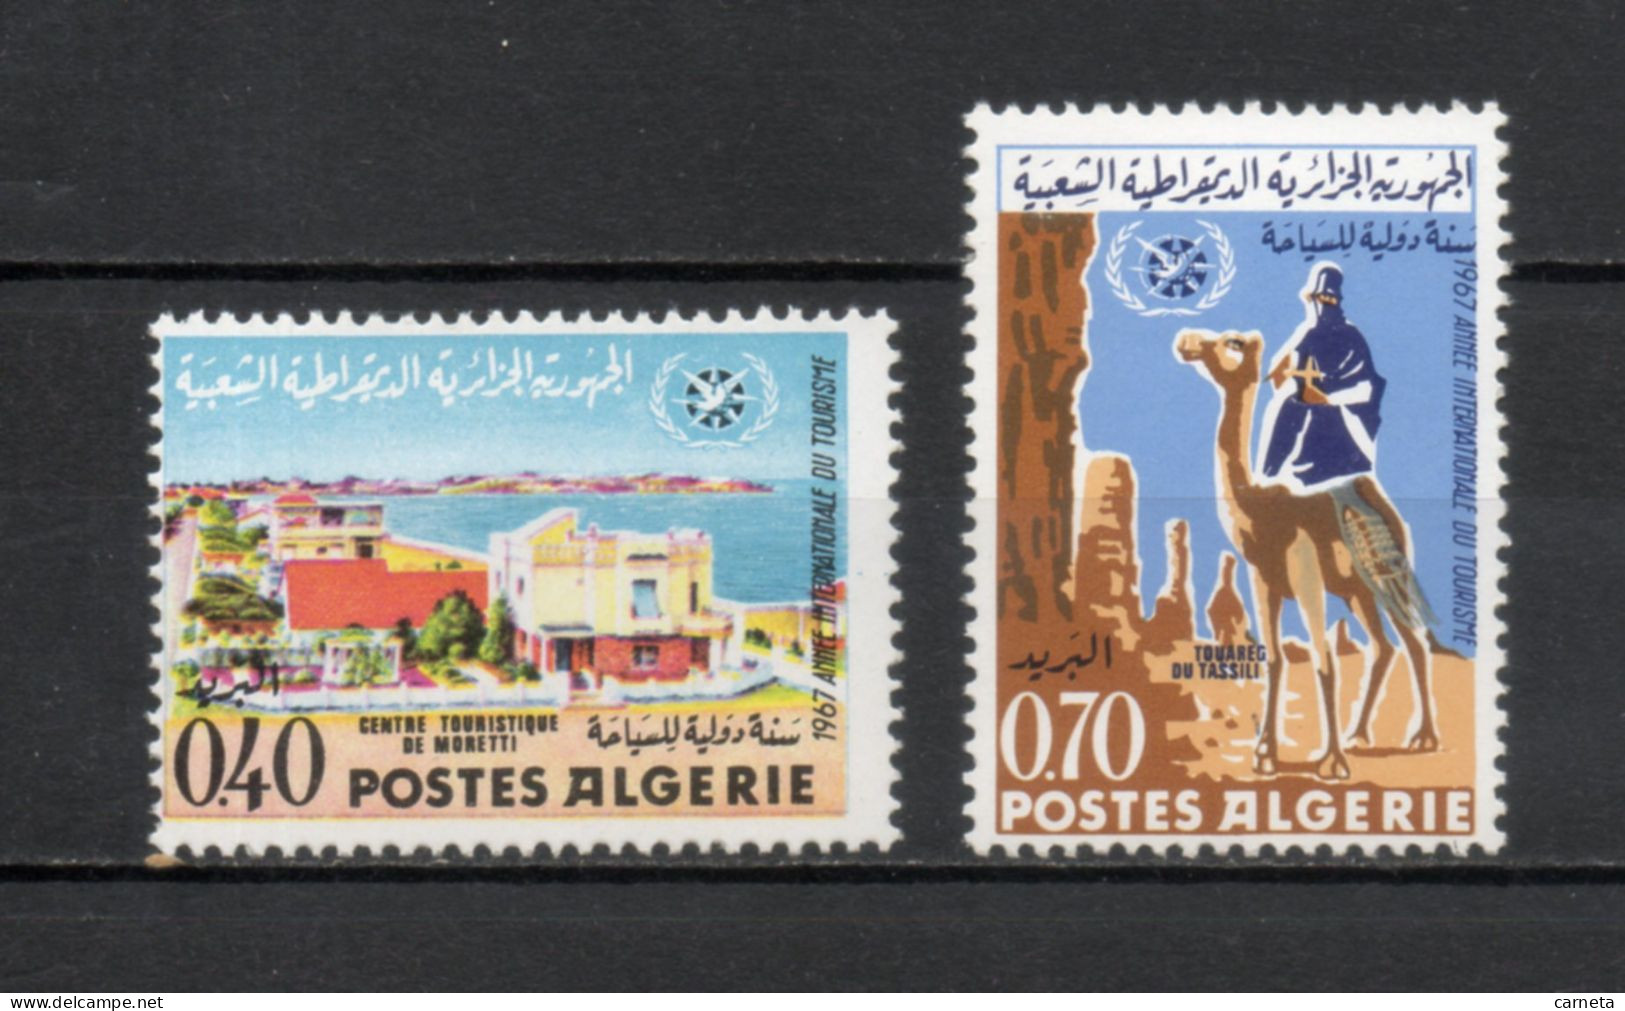 ALGERIE N° 444 + 445   NEUFS SANS CHARNIERE COTE 2.50€    TOURISME - Algeria (1962-...)